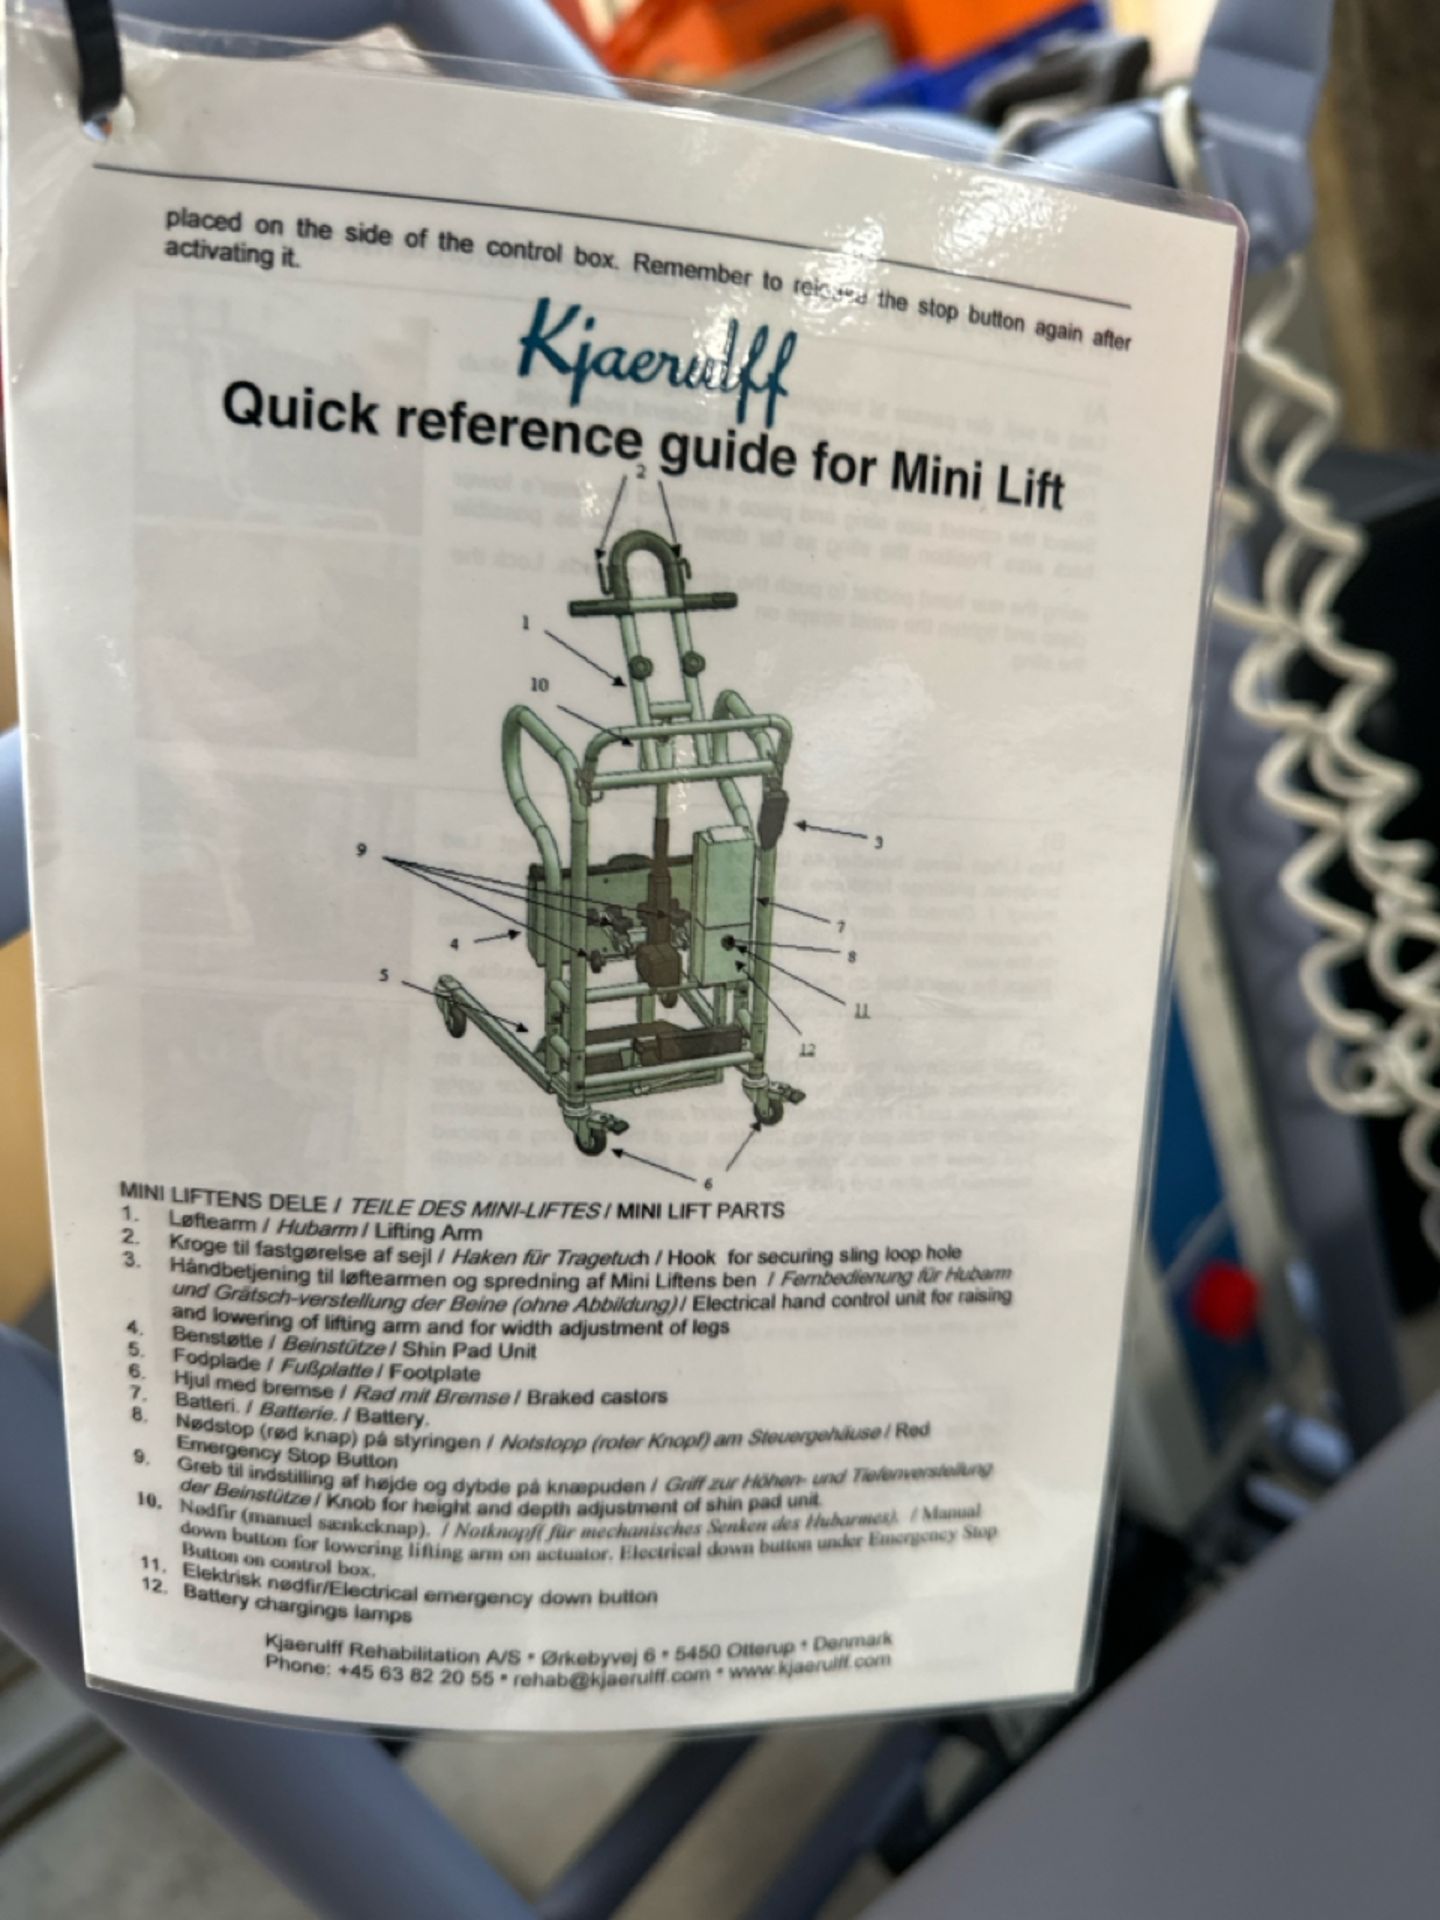 Kiaerulff Mini Lift - Image 4 of 6